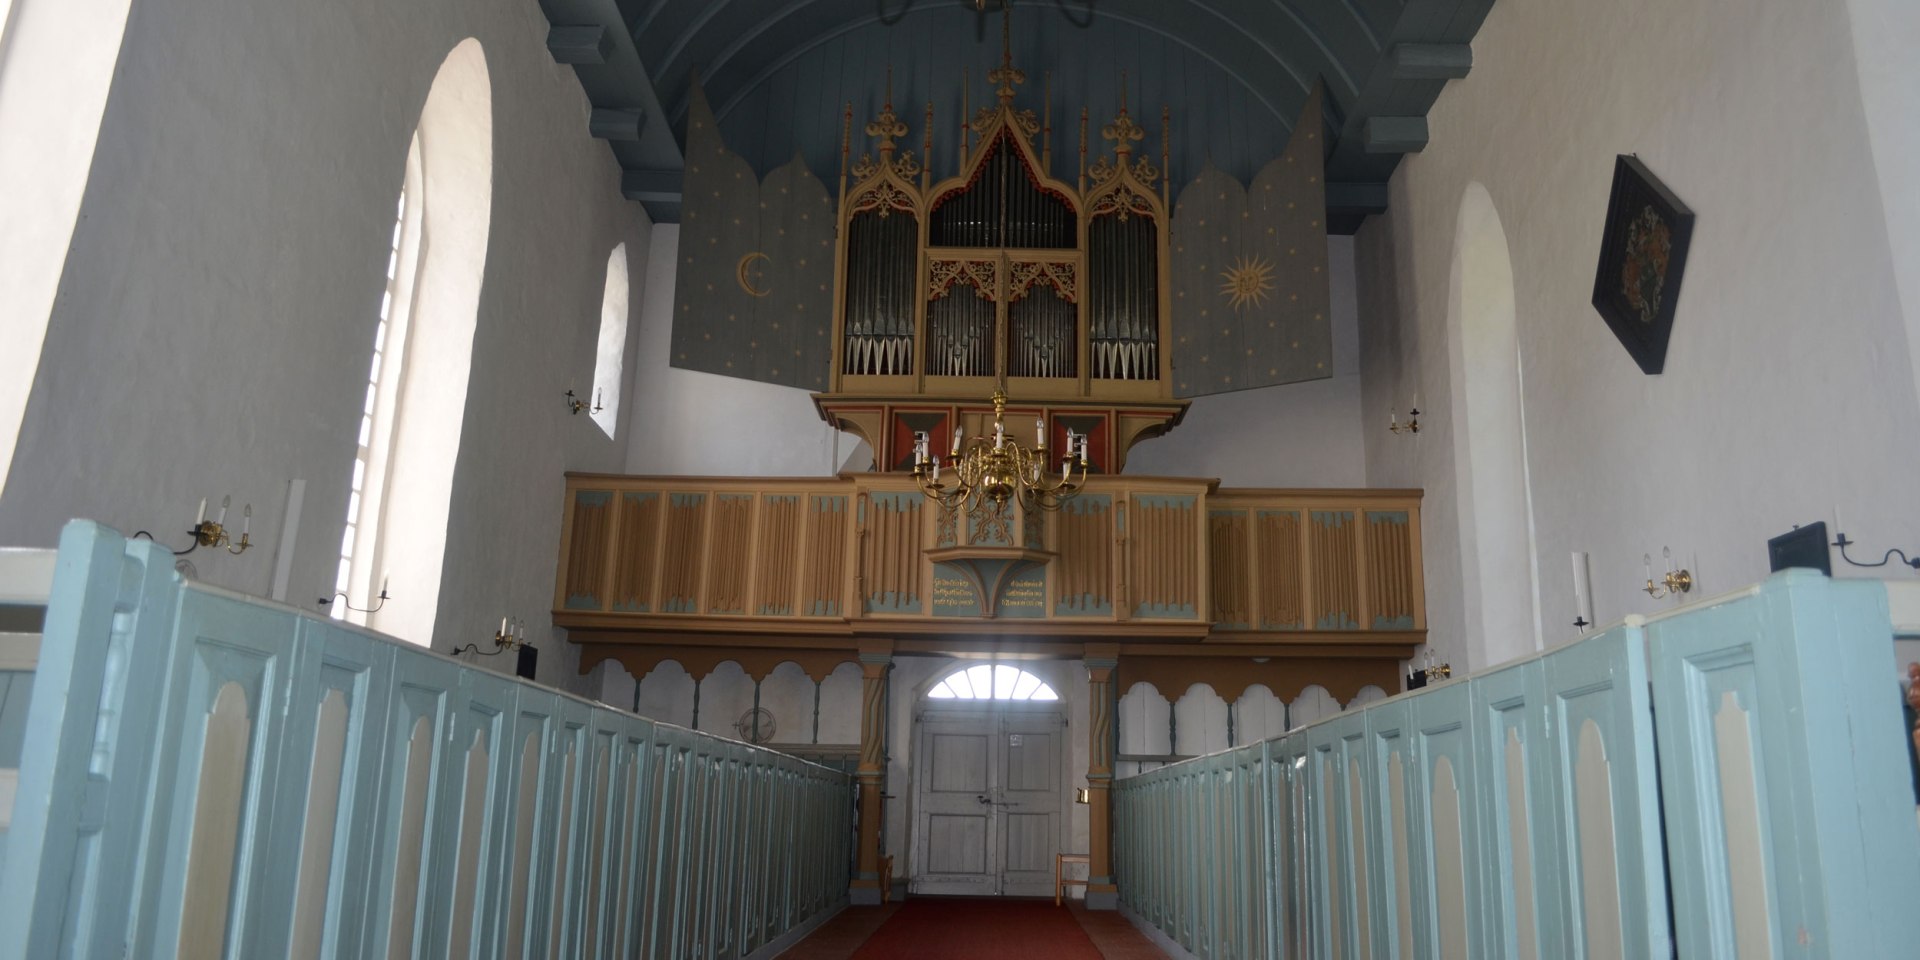 Gotische Orgel in der Rysumer Kirche, die älteste Orgel Norddeutschlands, © Ostfriesland Tourismus GmbH / www.ostfriesland.de